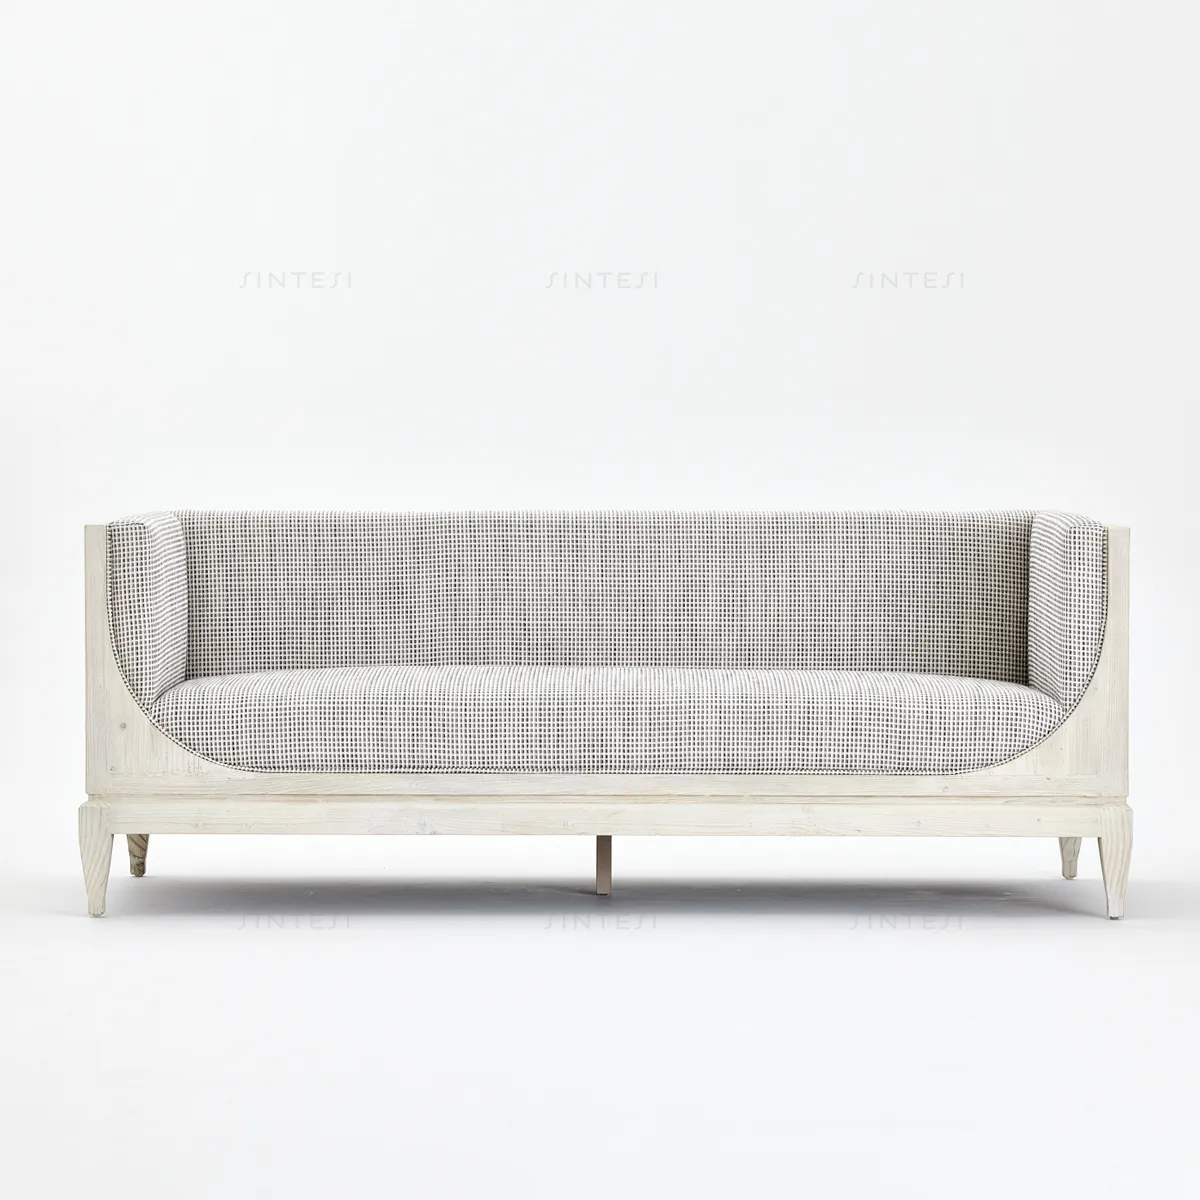 Modernes skandinavisches minimalistisches weißkiefer-Stoffsofa sonstige Möbel recycelte Kiefer für Hotel Wohnzimmer Dekoration